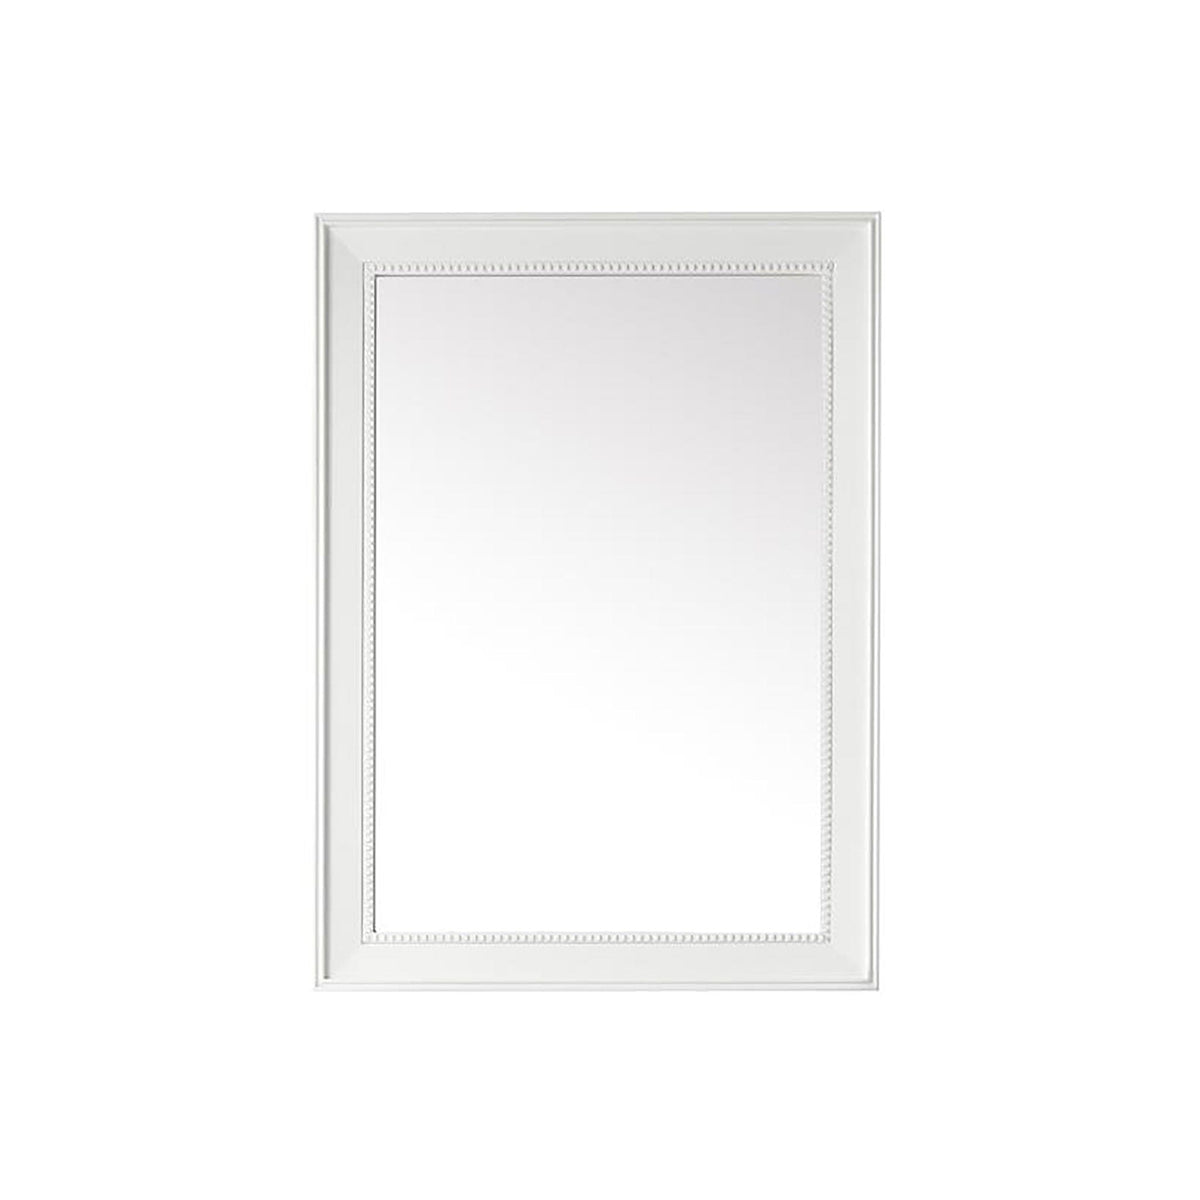 29" Bristol Rectangular Mirror, Glossy White